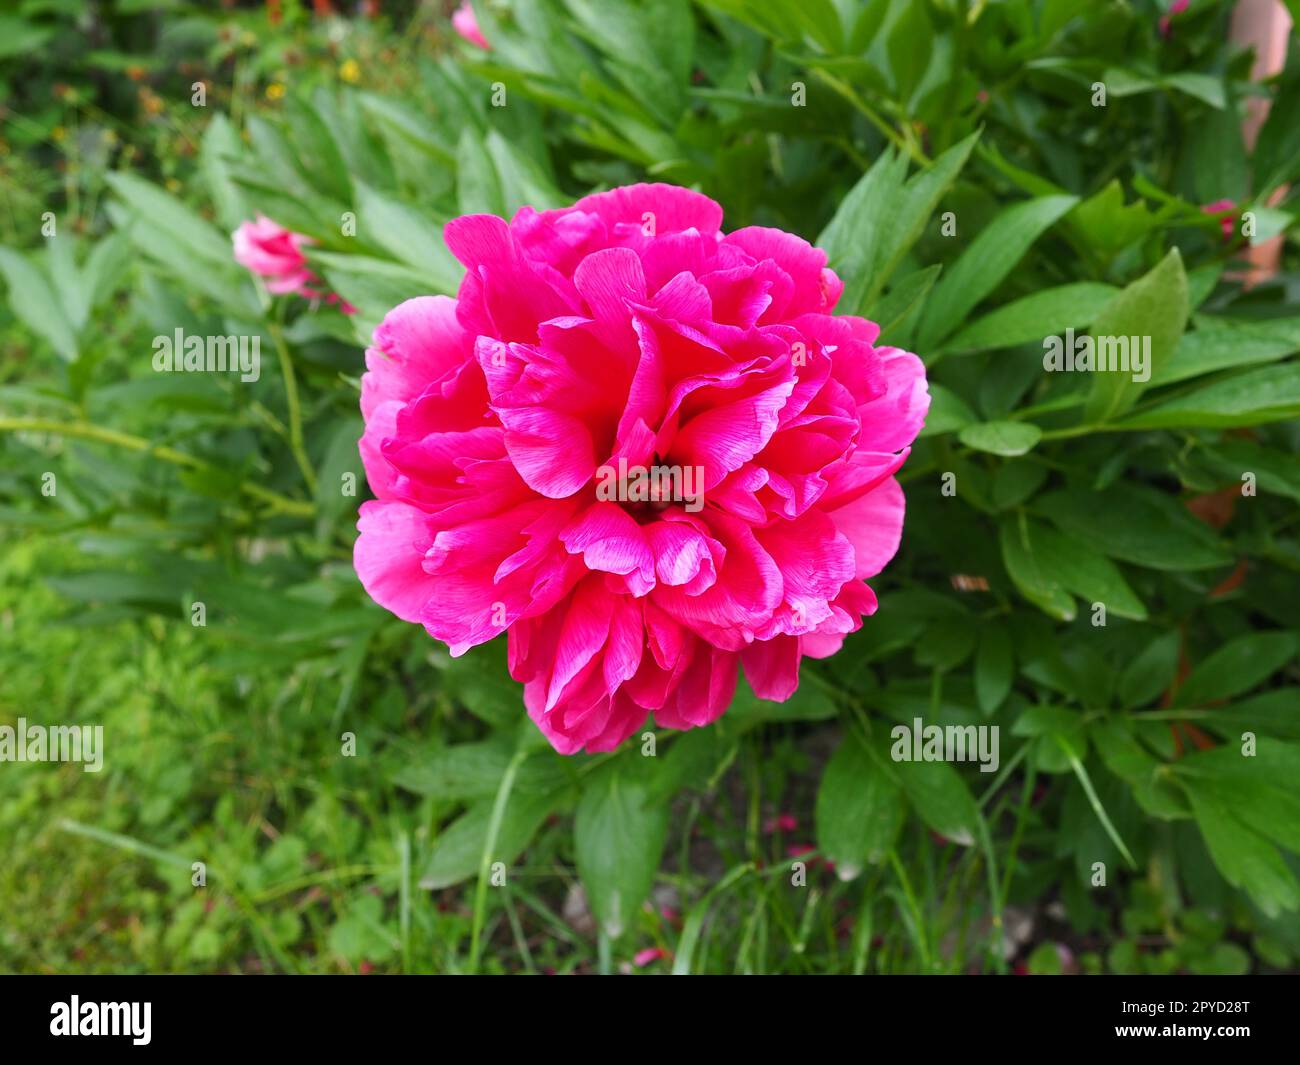 Rot-rosa Pfingstrosen. Wunderschöne große Pfingstrosen vor grünem Laub und Gras. Floristik, Blumenzucht und Gartenarbeit als Hobby Stockfoto